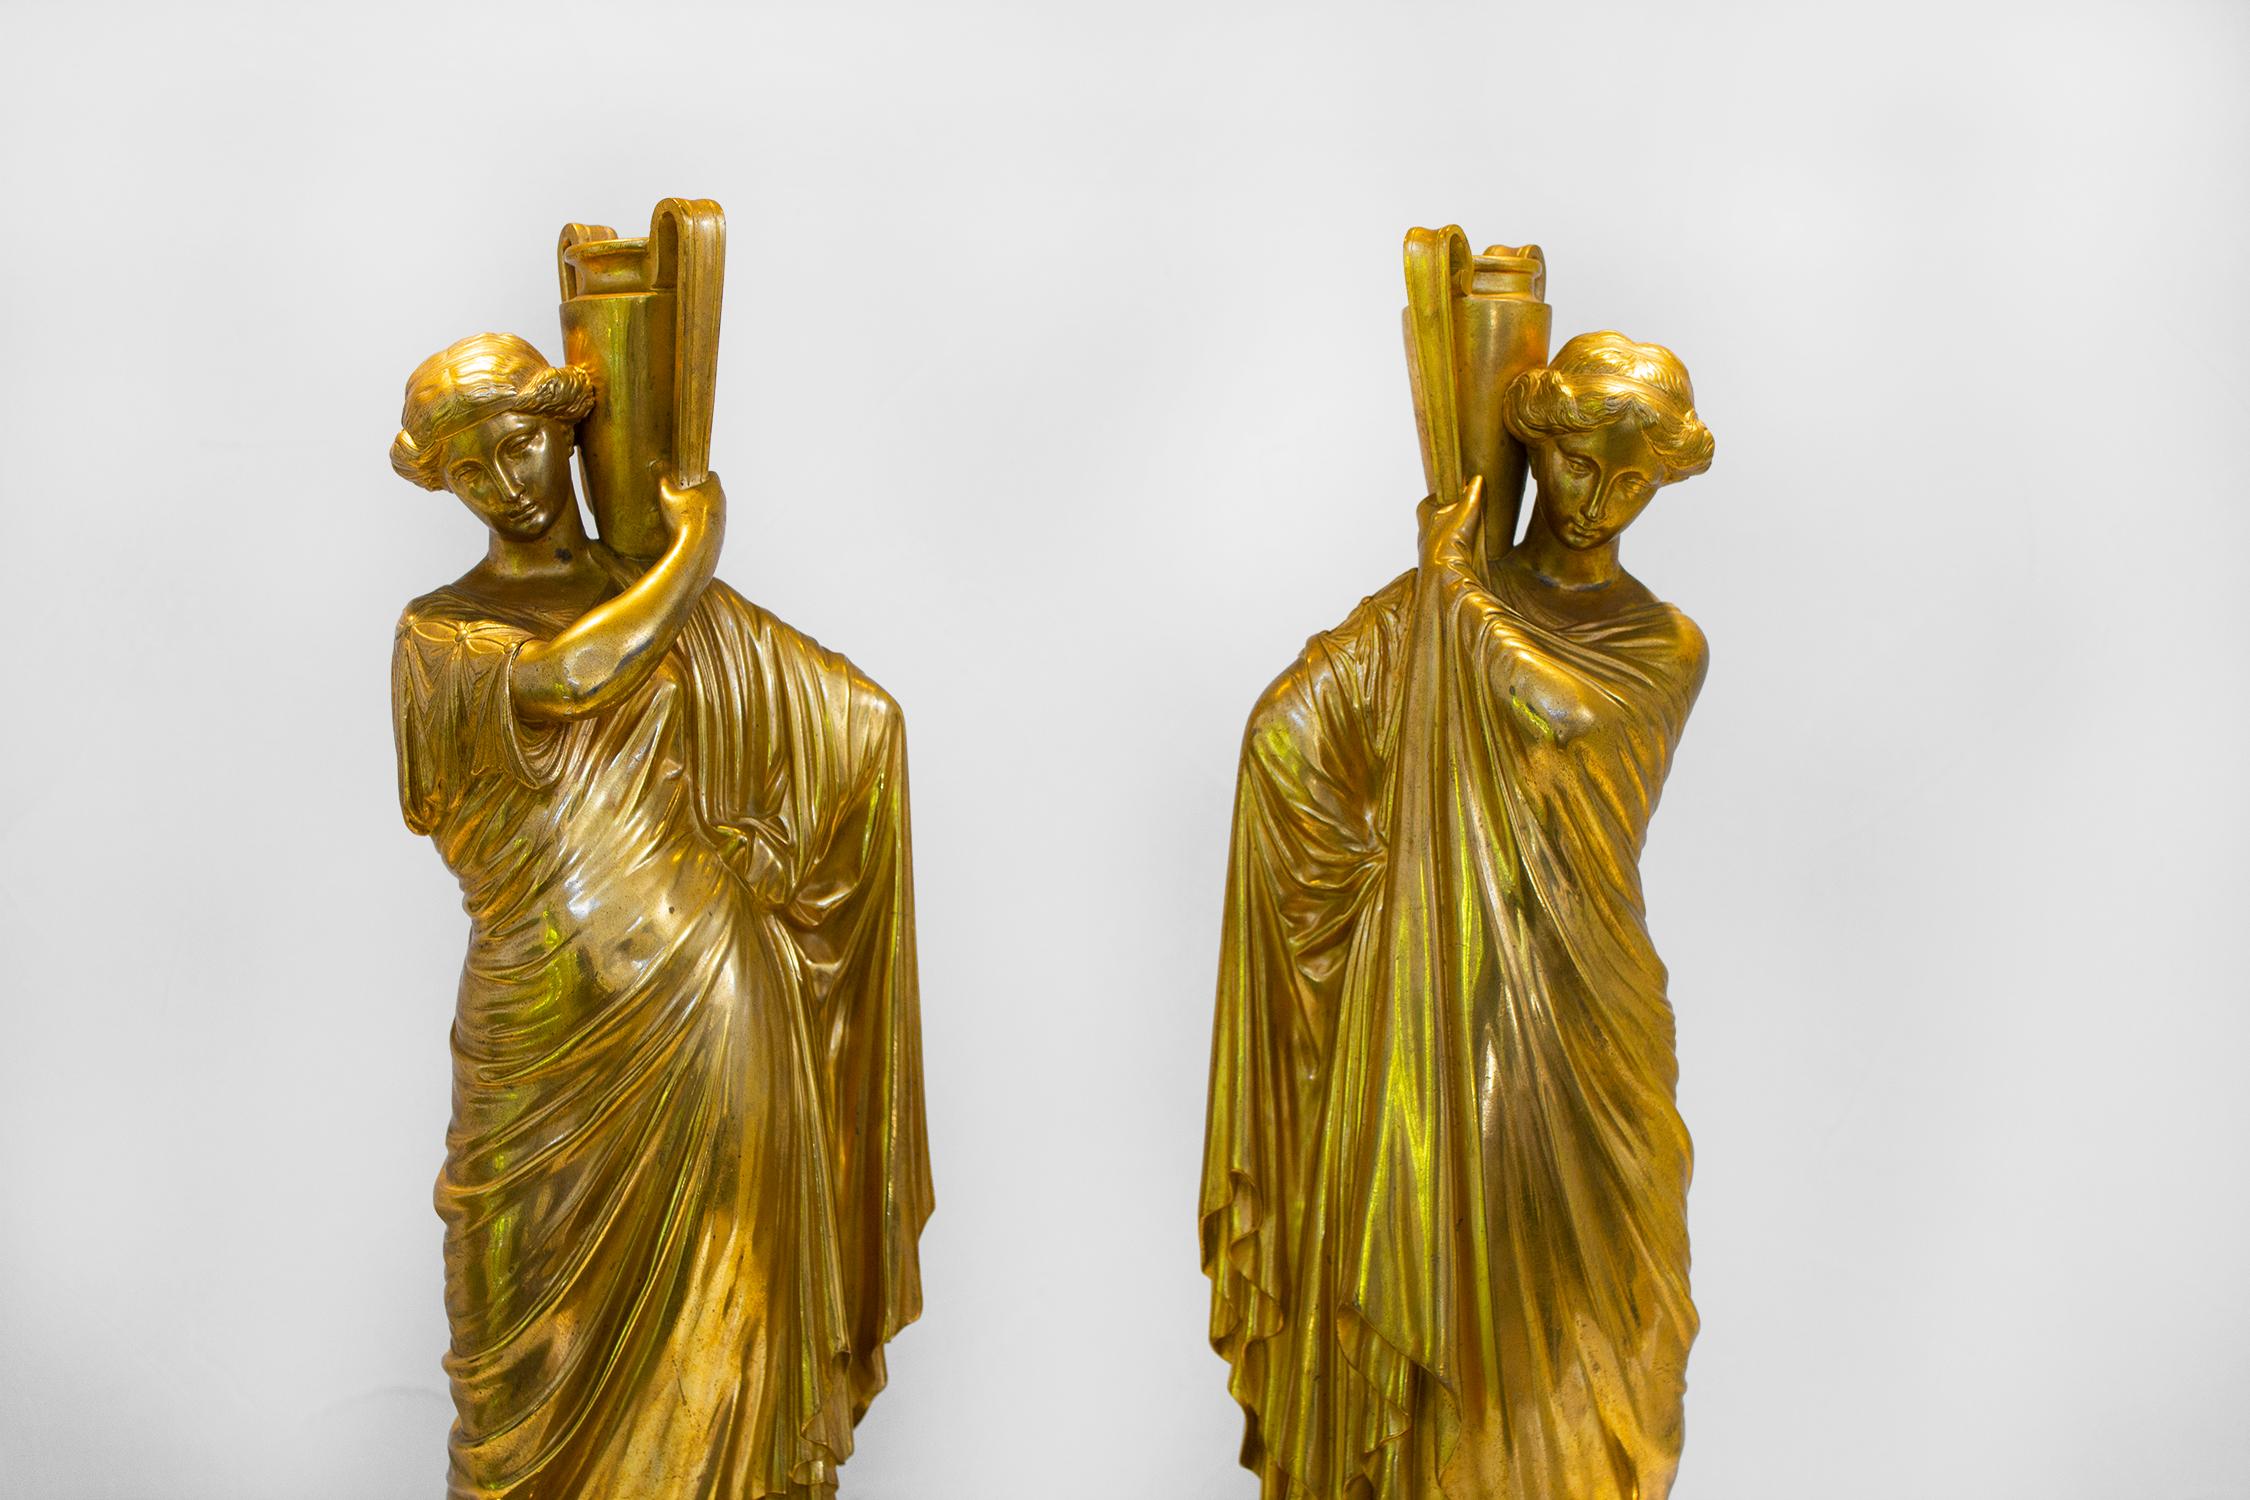 Magnifique paire de femmes romaines en bronze doré antique sur des bases en marbre nouvellement fabriquées. Ils sont creux et les cruches d'eau sont ouvertes, ce qui permet de les utiliser pour présenter un arrangement sans eau.